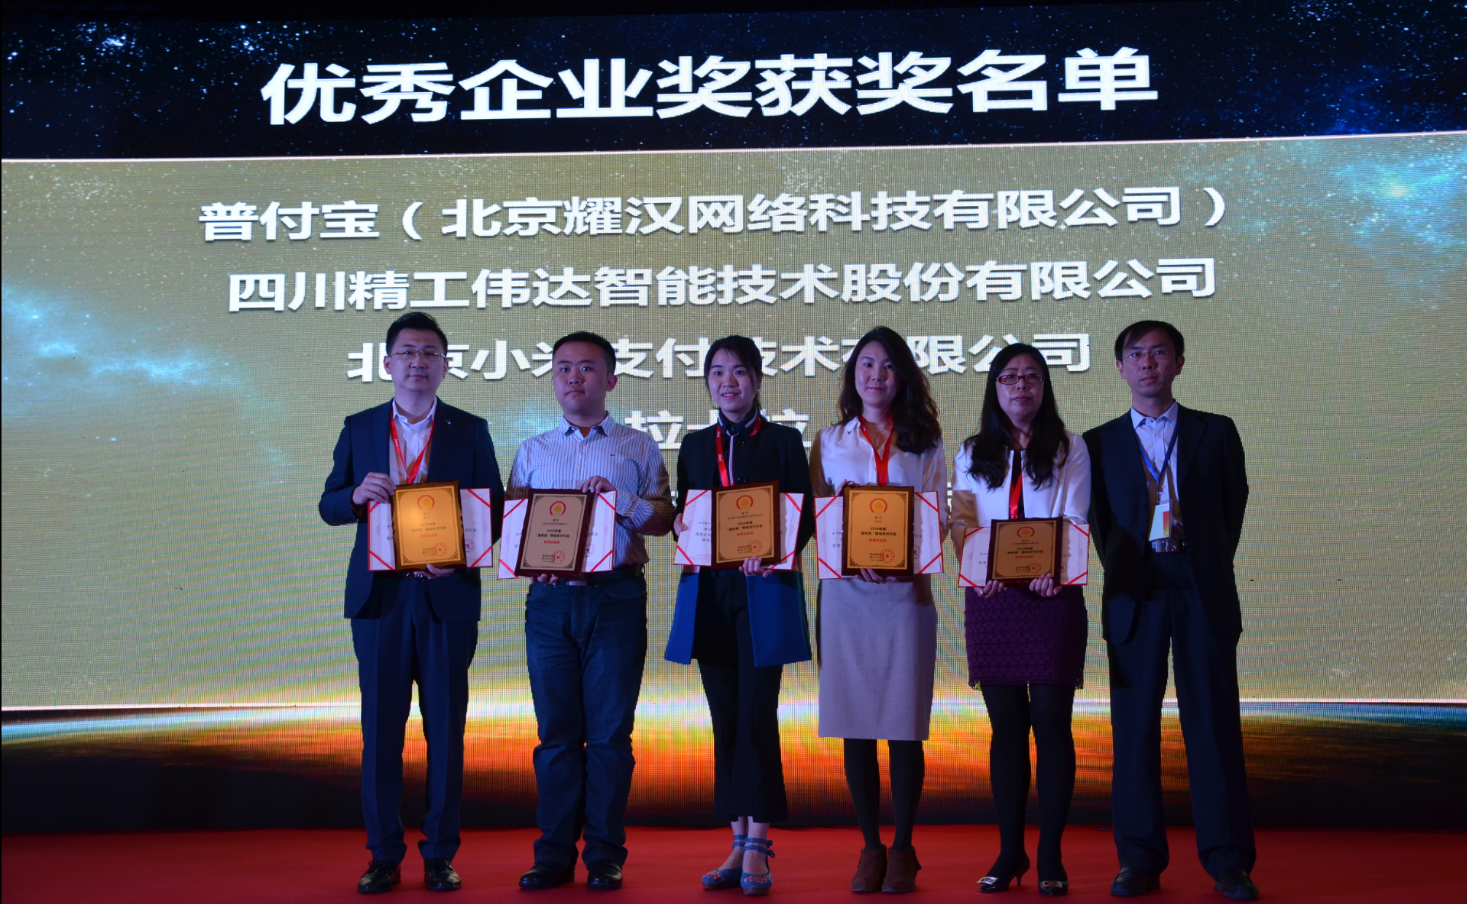 握奇憑藉“手機盾方案”榮獲2017中國移動金融發展大會金松獎“優秀企業獎”